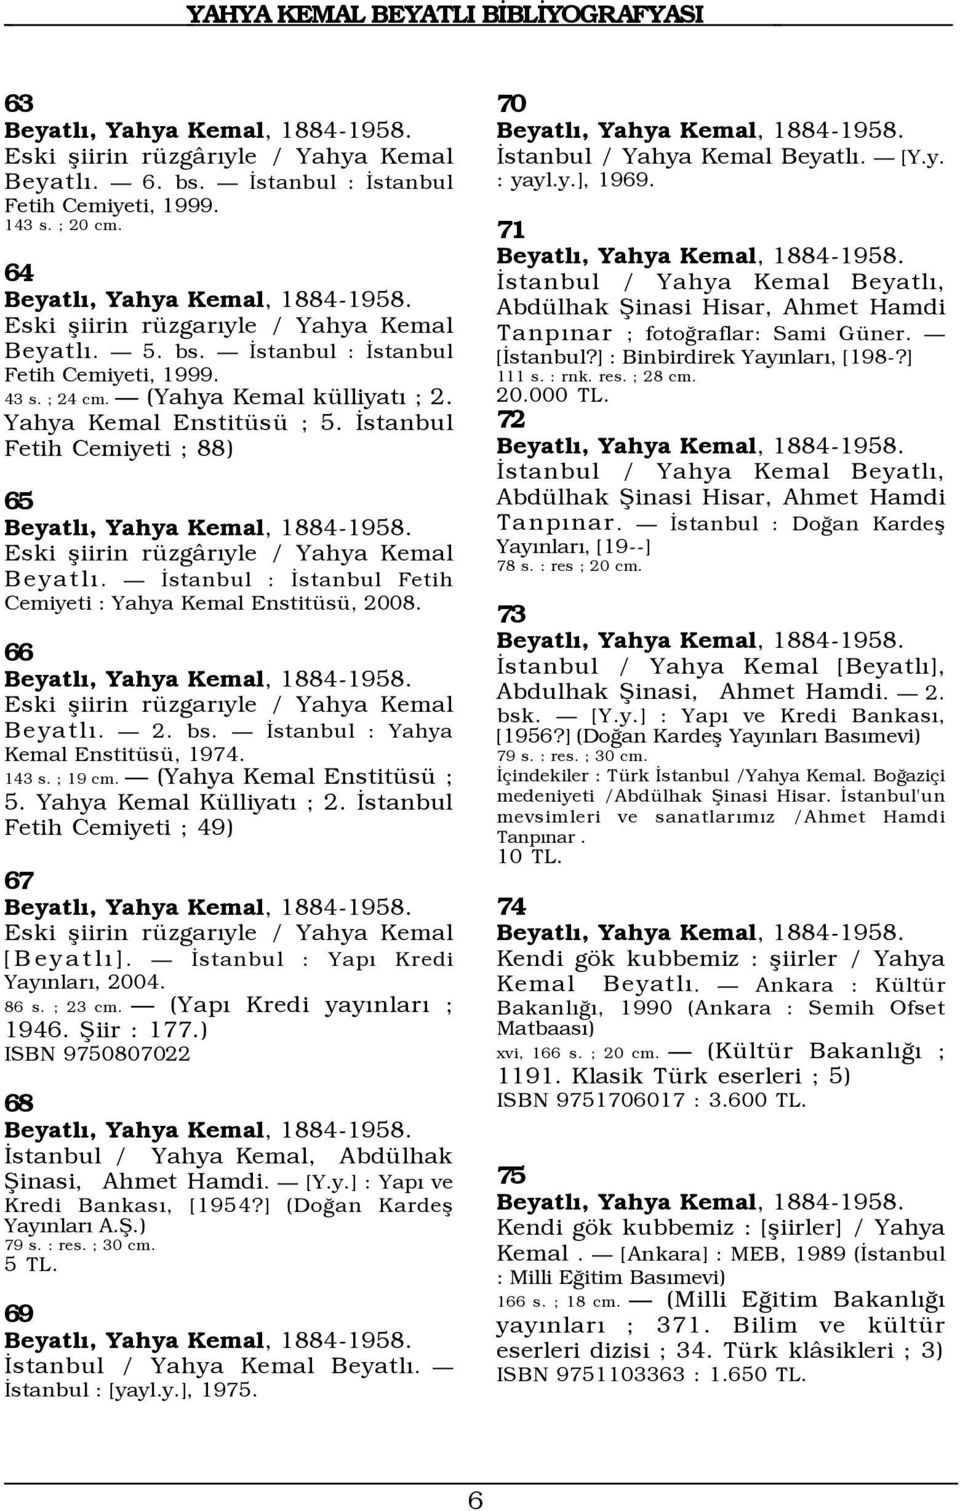 Ñ Üstanbul : Üstanbul Fetih Cemiyeti : Yahya Kemal EnstitŸsŸ, 2008. 66 Eski ßiirin rÿzgarýyle / Yahya Kemal BeyatlÝ. Ñ 2. bs. Ñ Üstanbul : Yahya Kemal EnstitŸsŸ, 1974. 143 s. ; 19 cm.